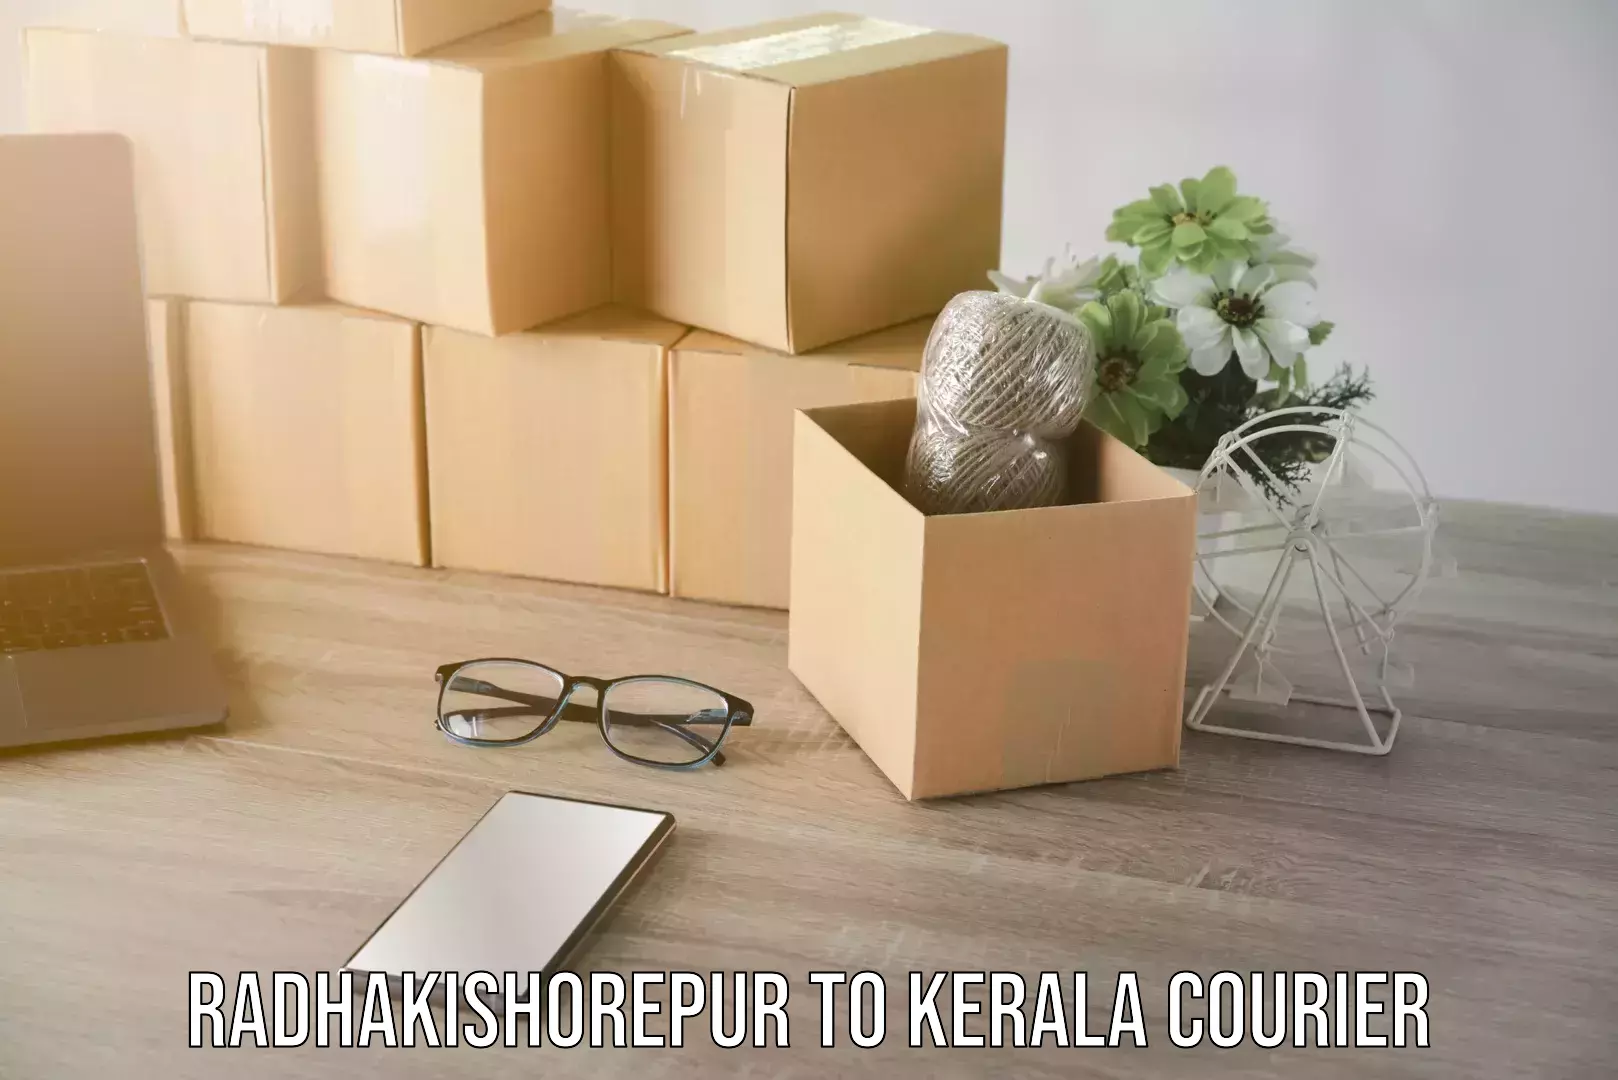 Express logistics Radhakishorepur to Kerala